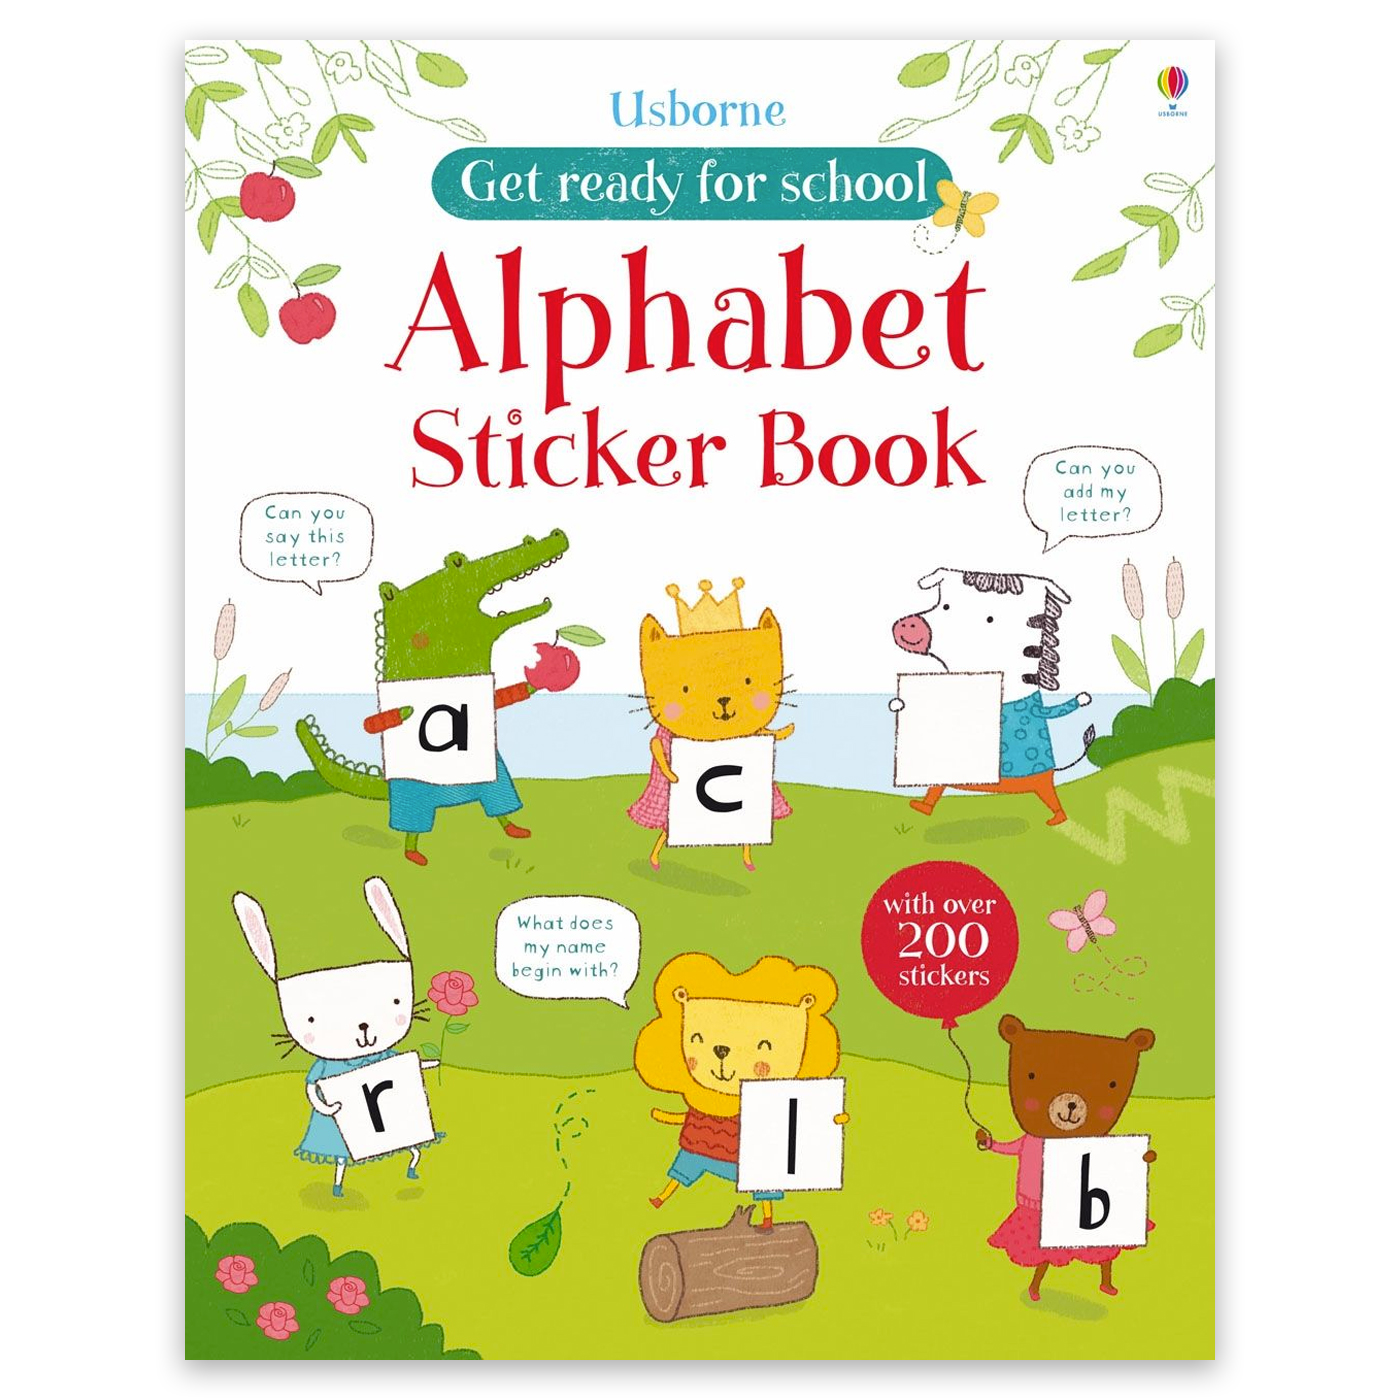  Alphabet Sticker Book